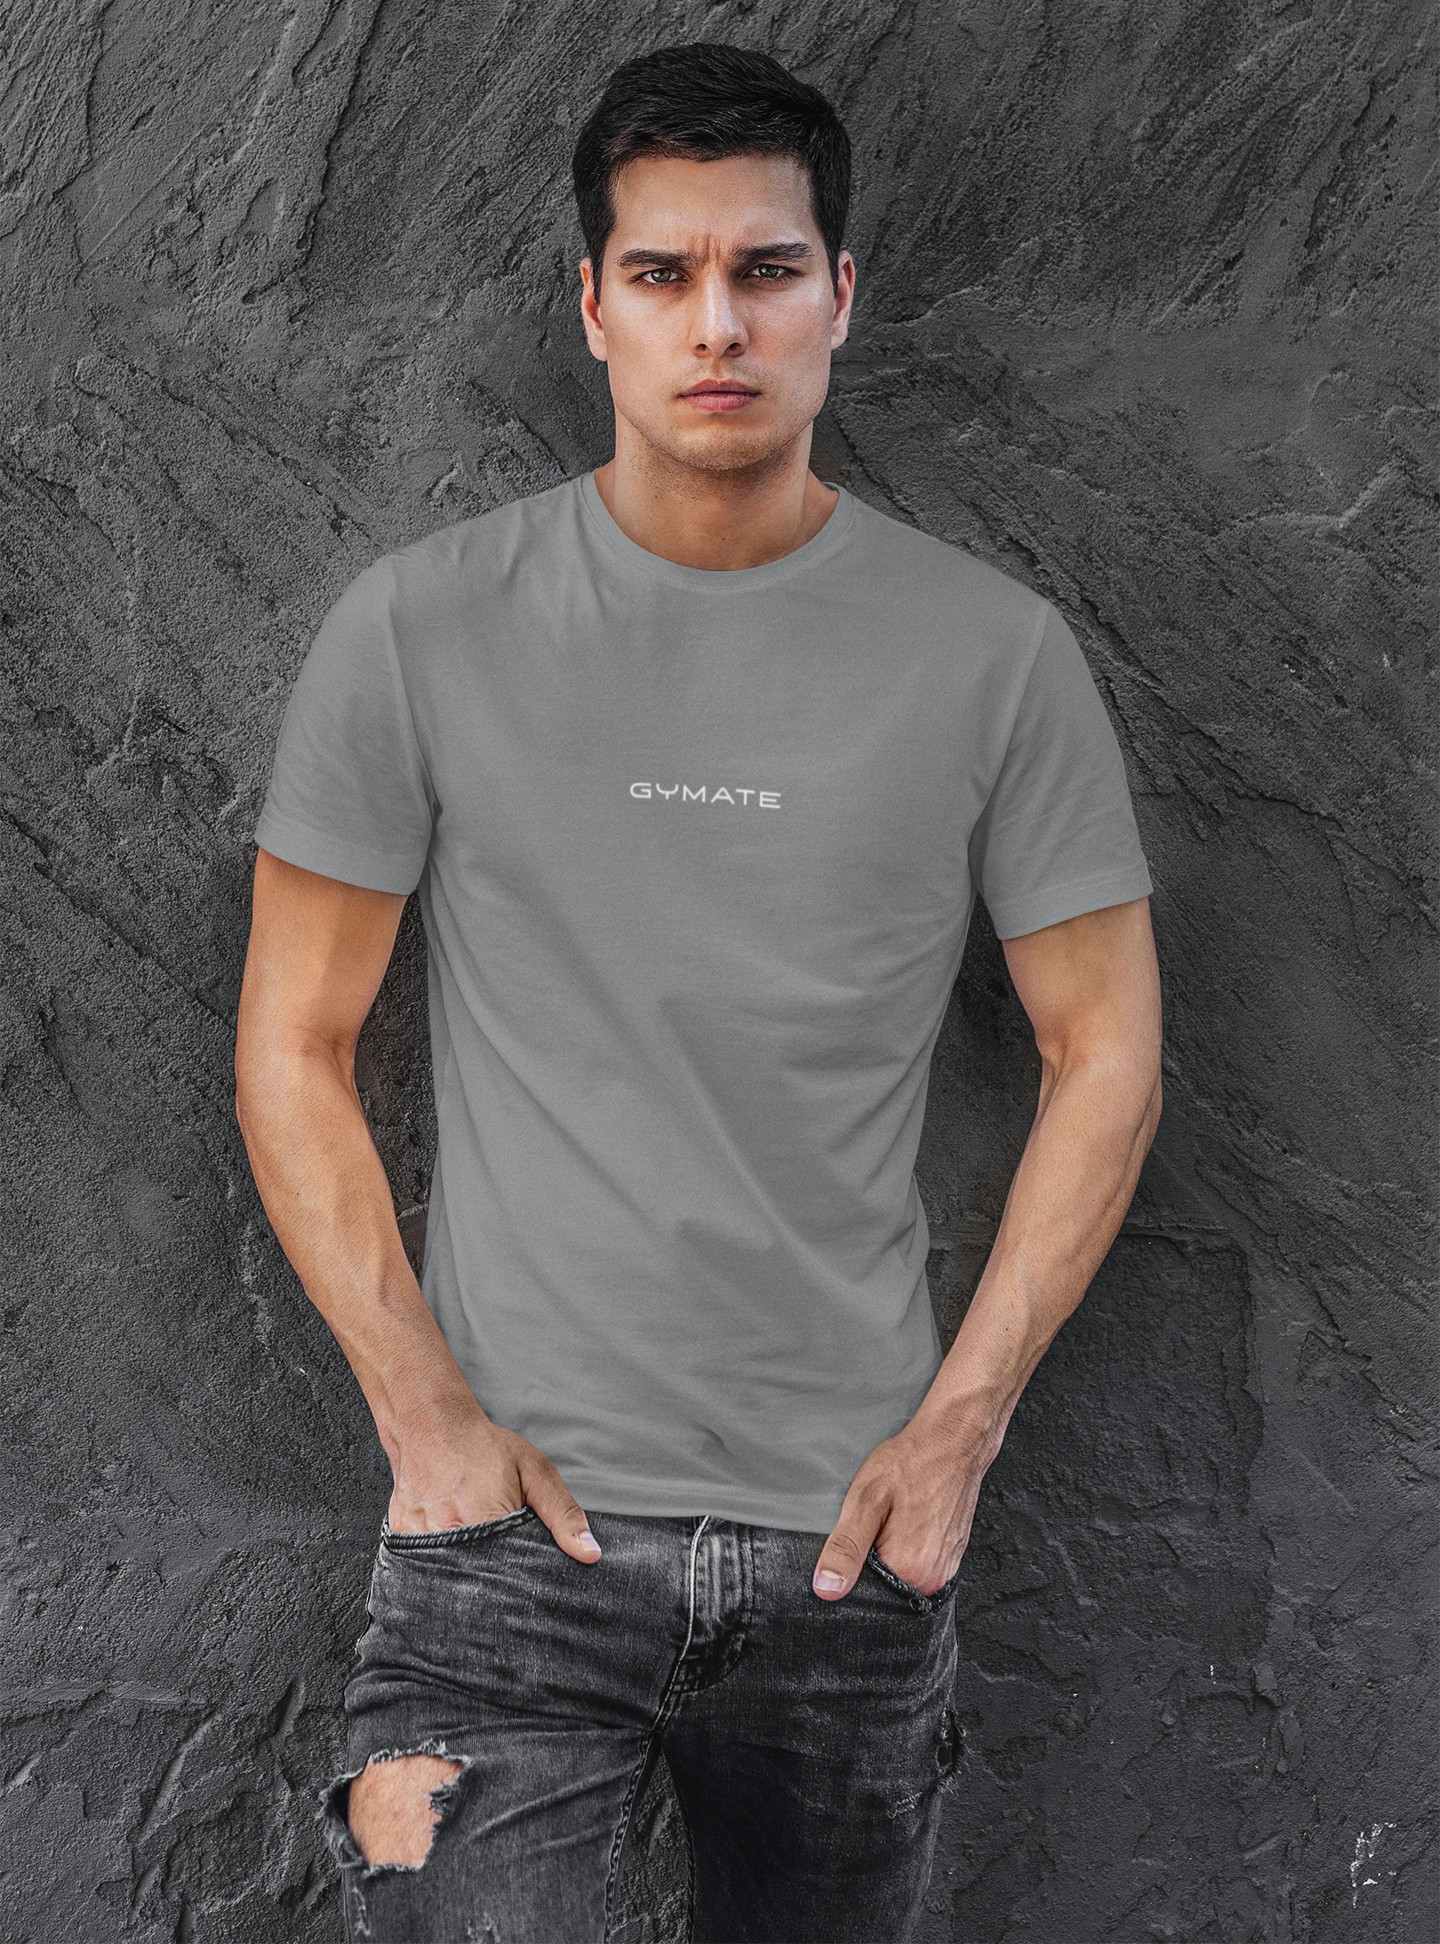 Designer mens T shirts Original Gymate sml/ctr grey